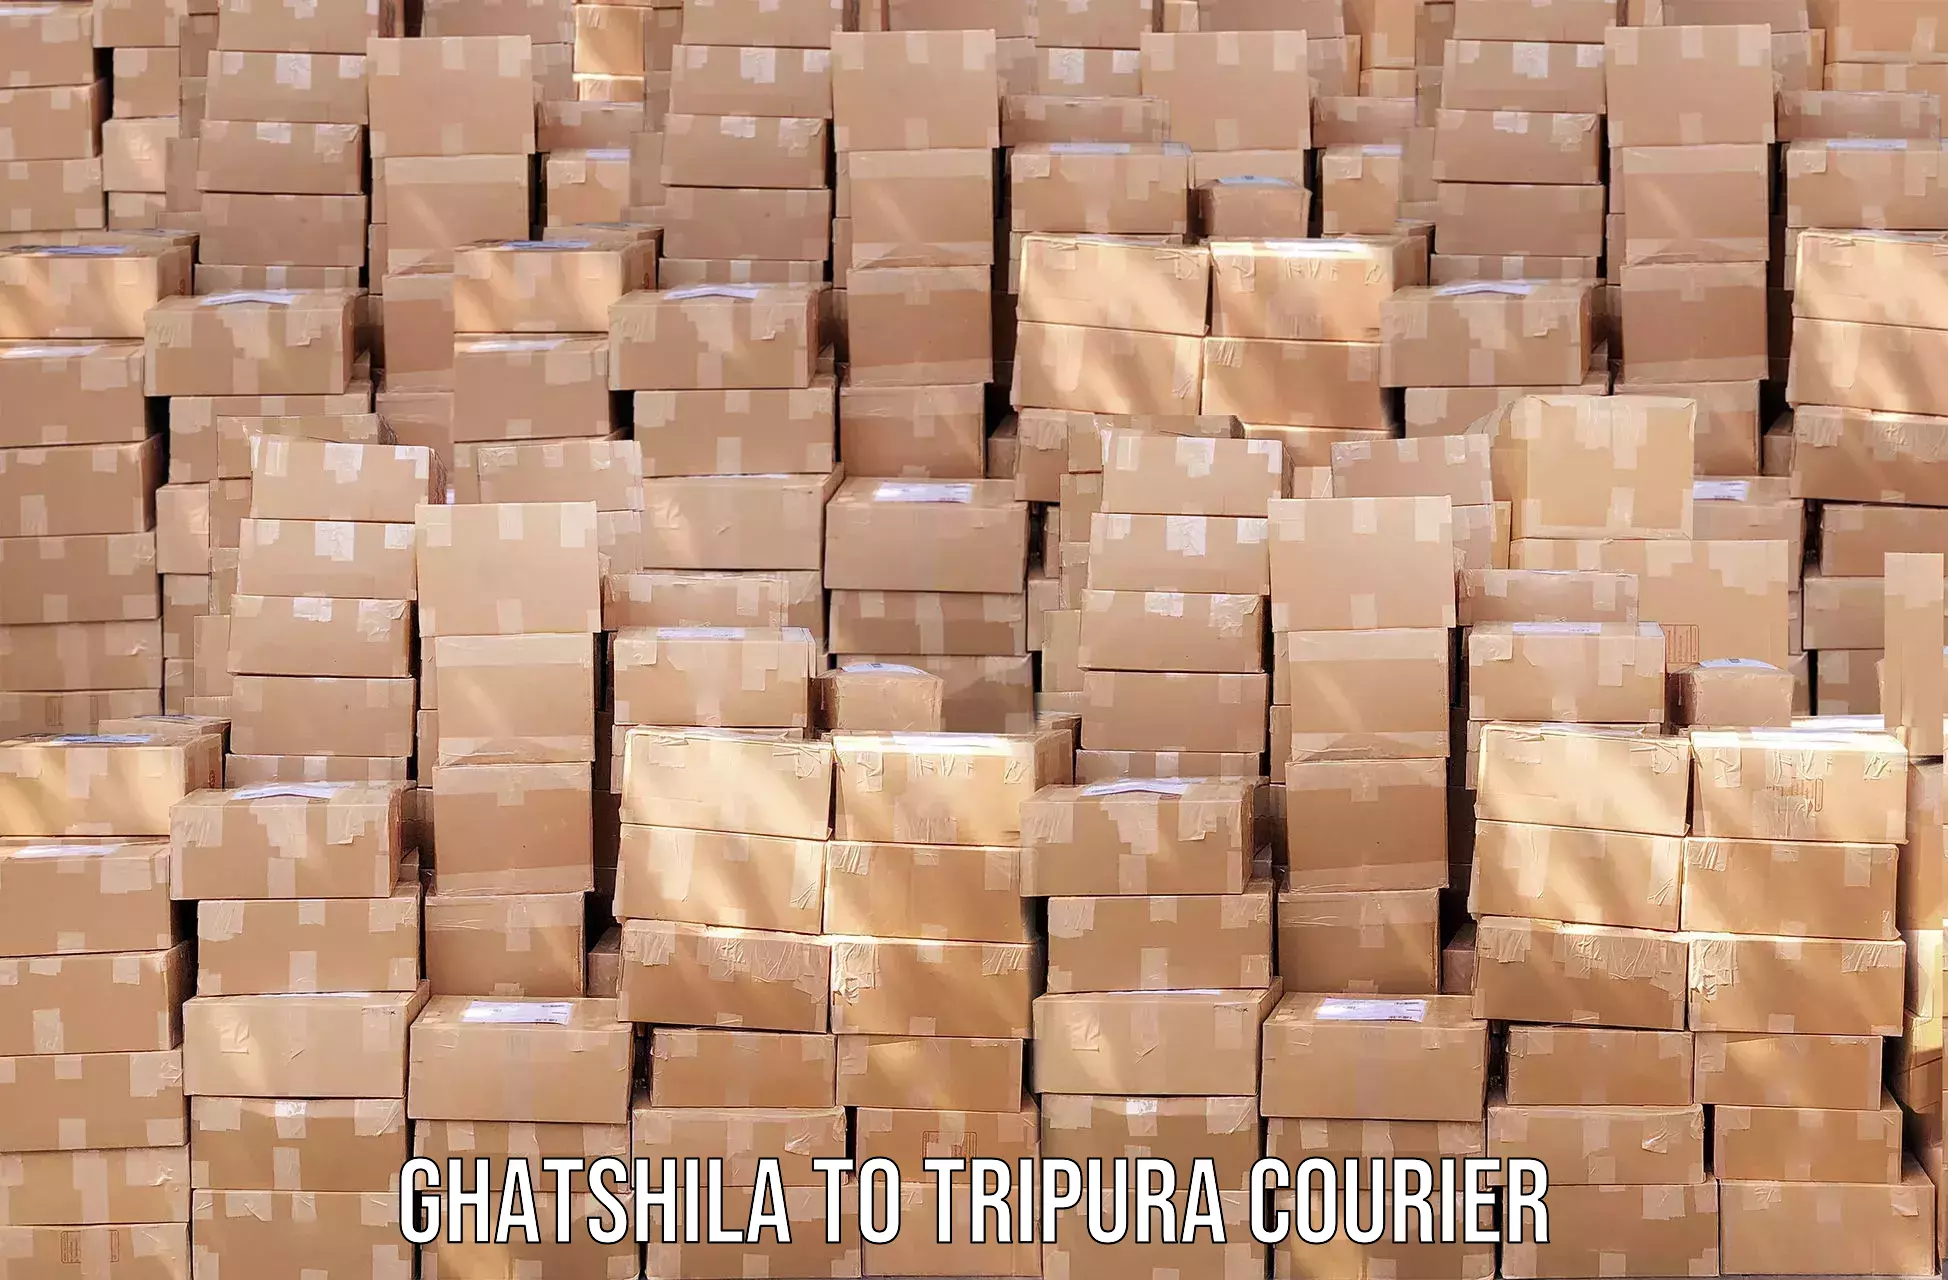 Nationwide shipping capabilities Ghatshila to IIIT Agartala